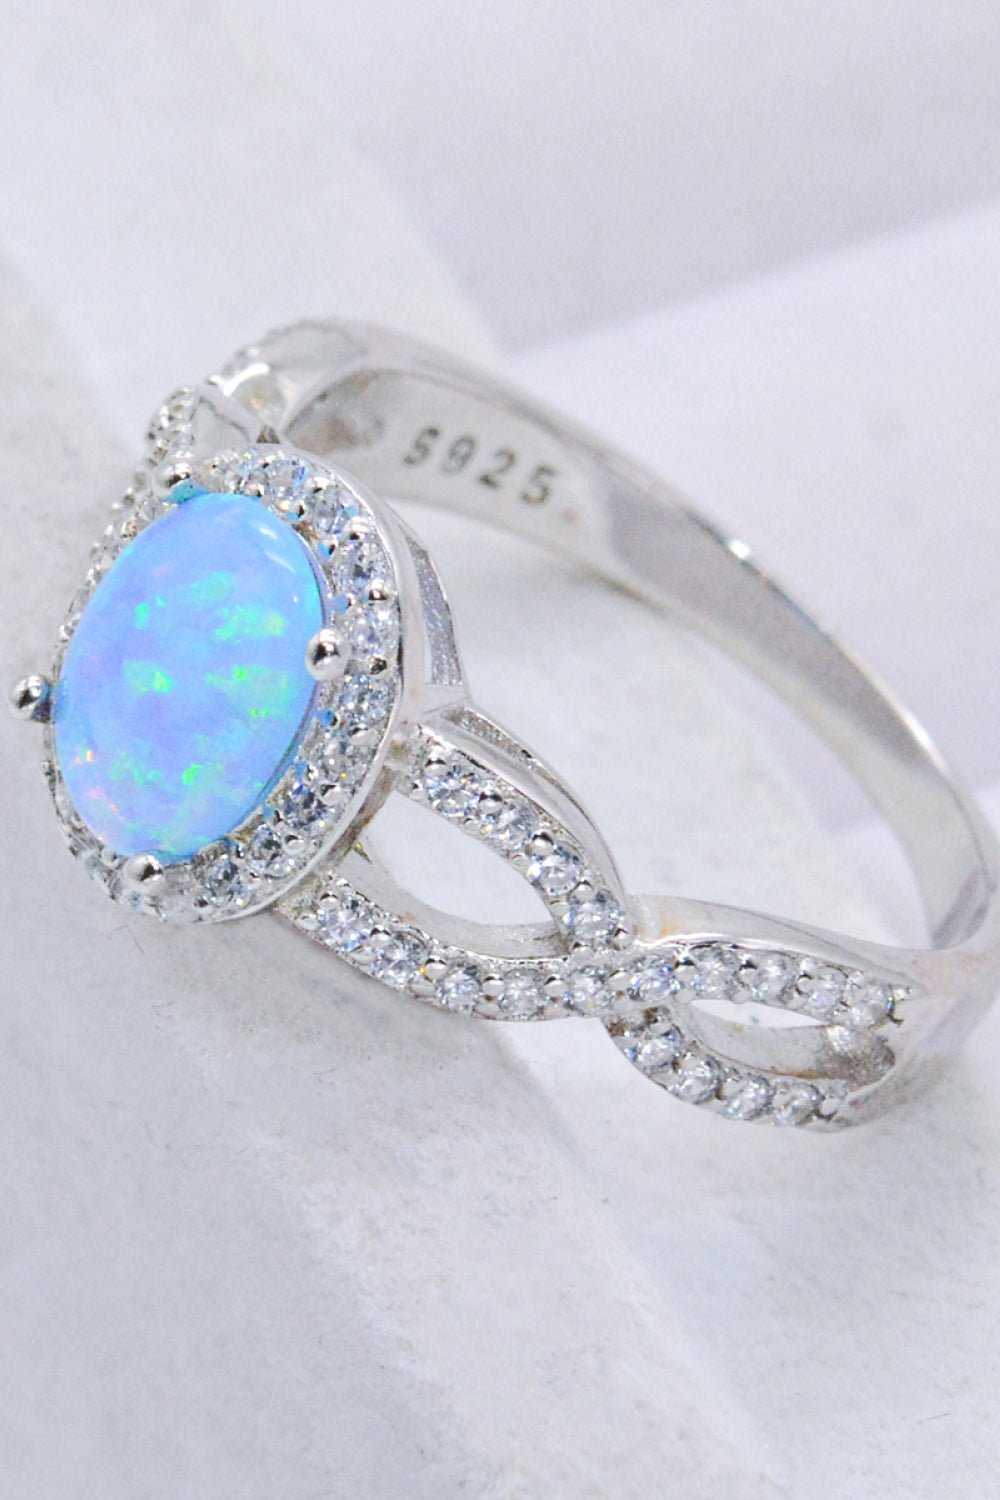 Blue Opal Halo Ring - Tangerine Goddess